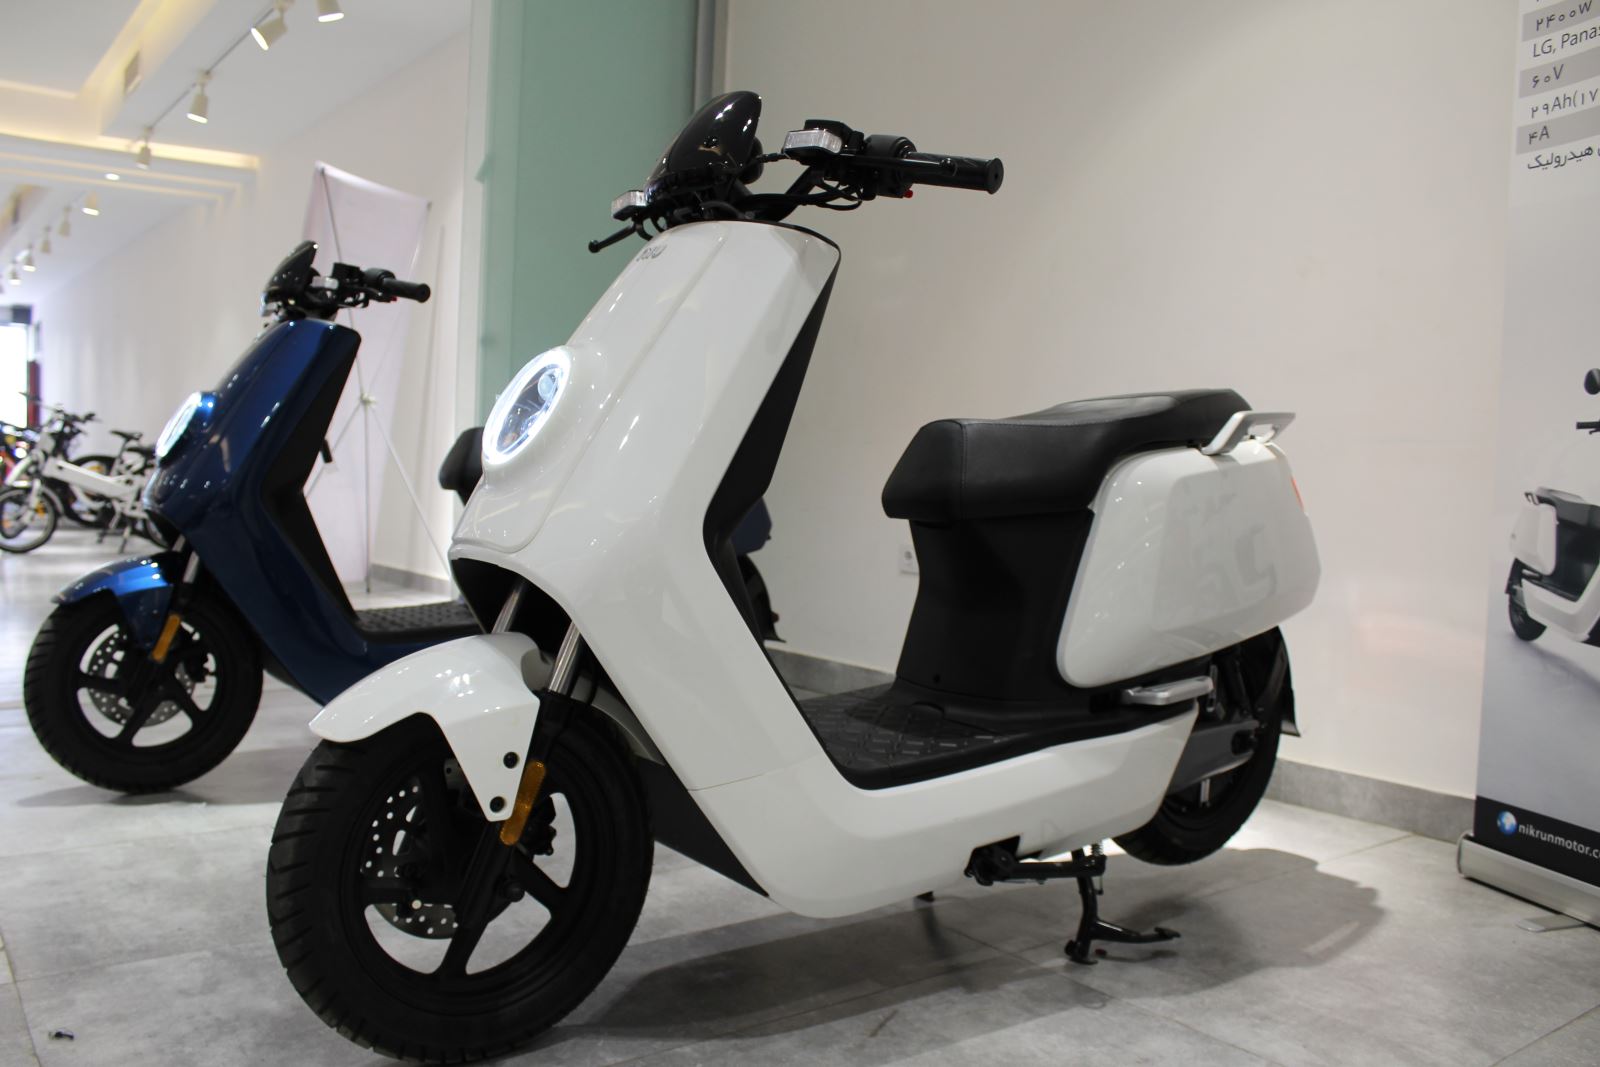 موتورسیکلت برقی سفید رنگ پارک شده در نمایشگاه سازمان برنامه و بودجه